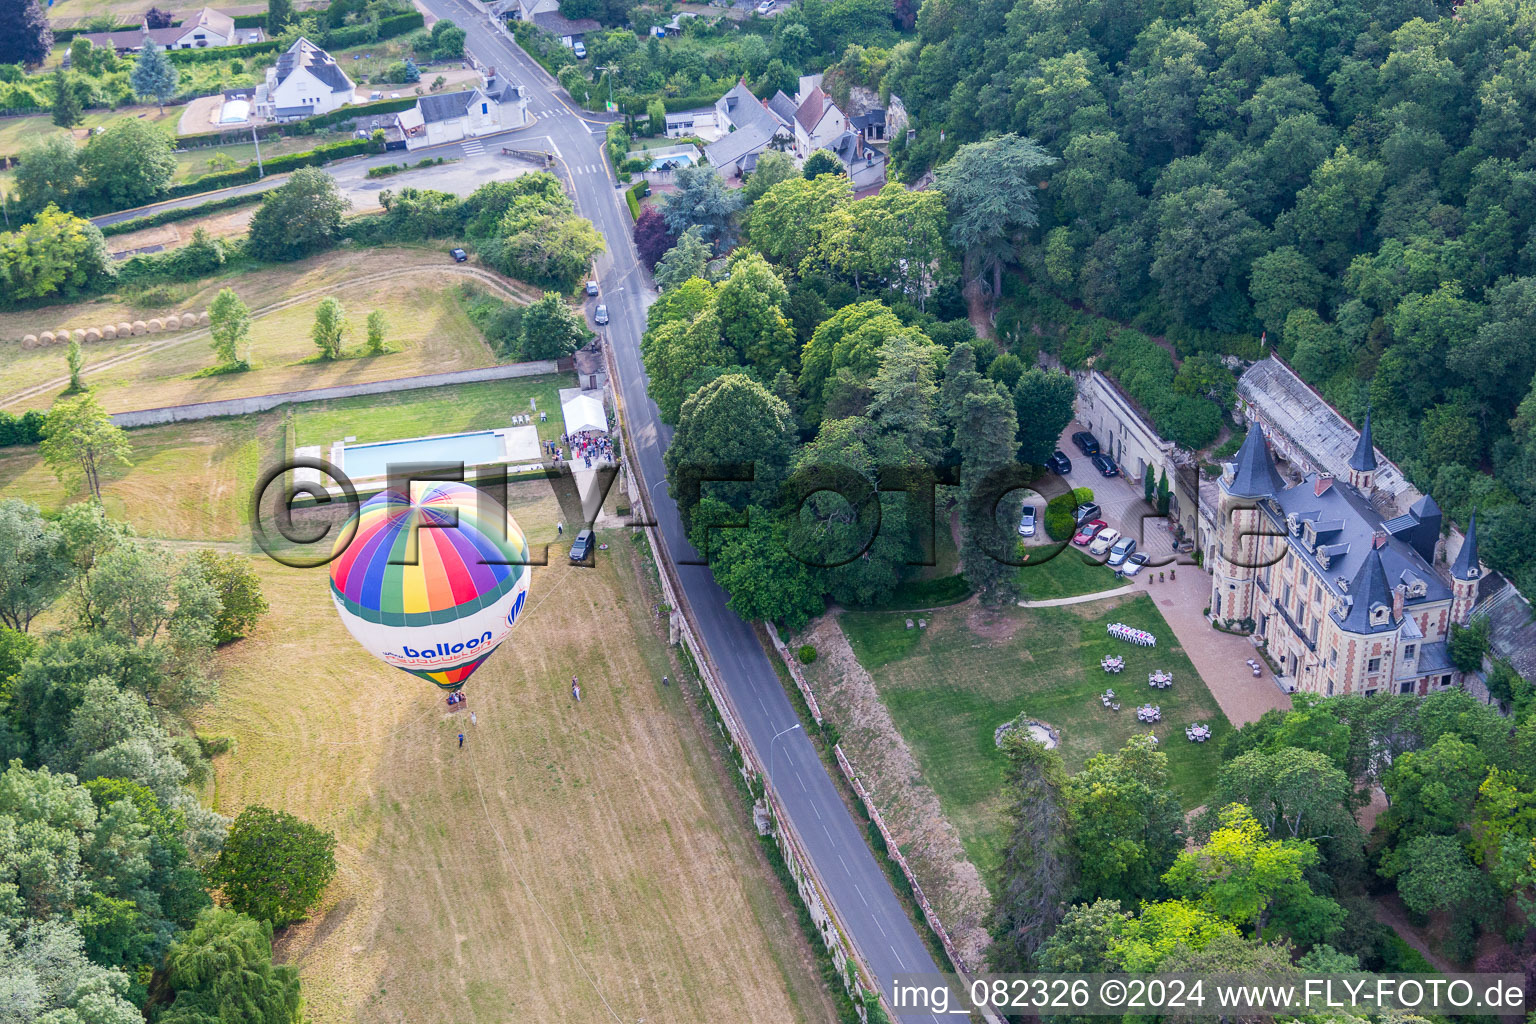 Vue aérienne de Décollage en montgolfière du Château de Perreux et déplacement au-dessus de l'espace aérien à Nazelles-Négron dans le département Indre et Loire, France